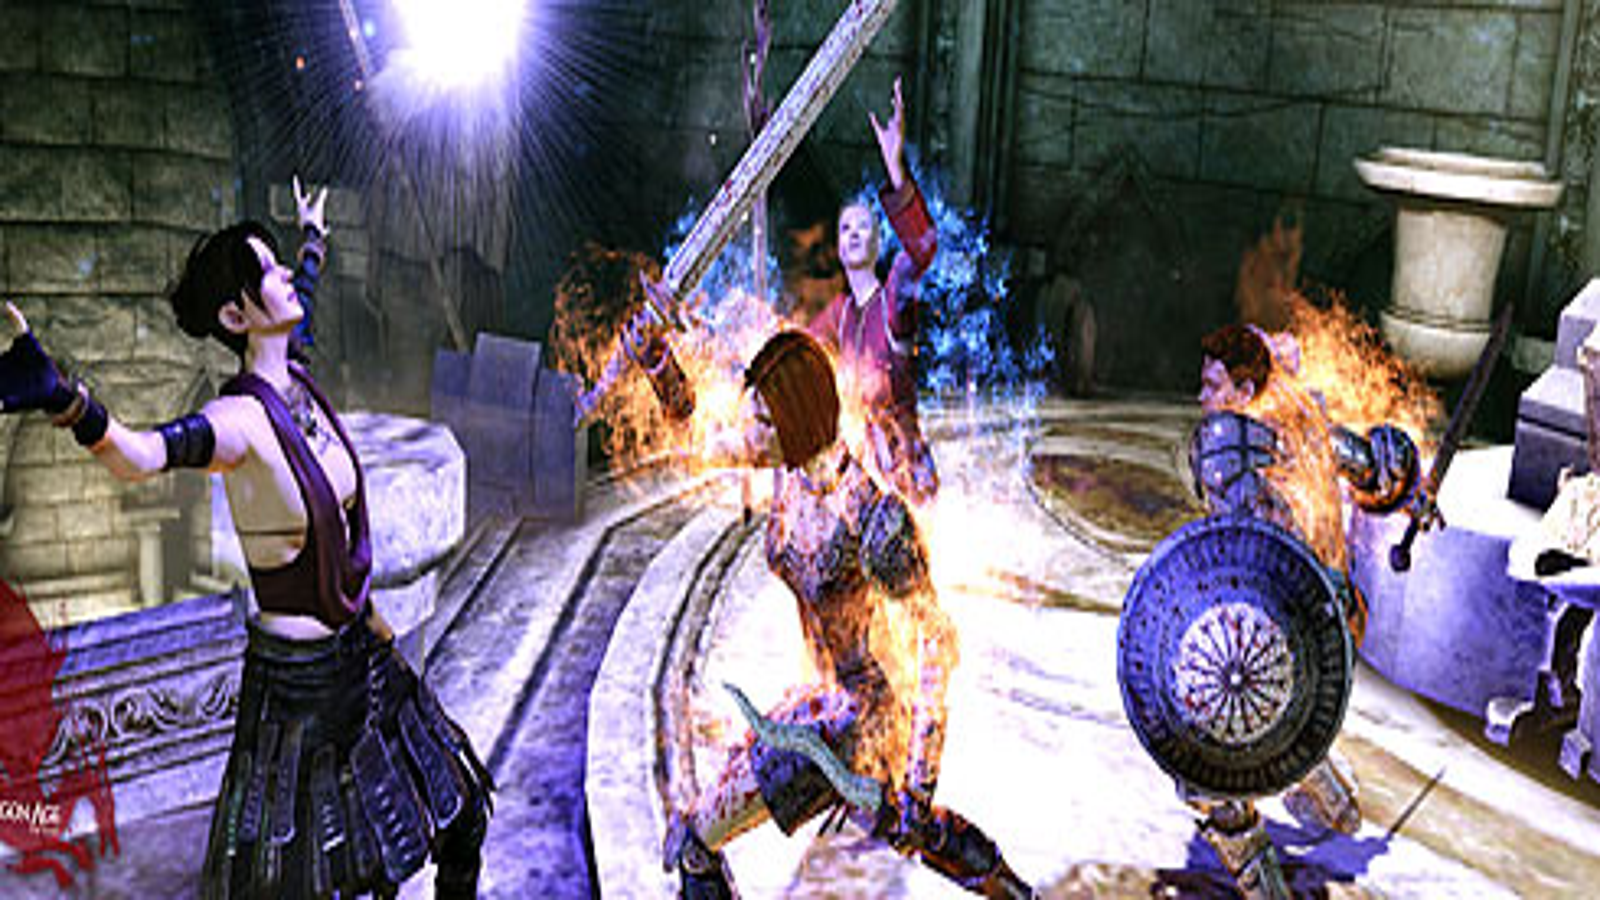 Electronic Arts Dragon Age: Origins Awakening / Game 